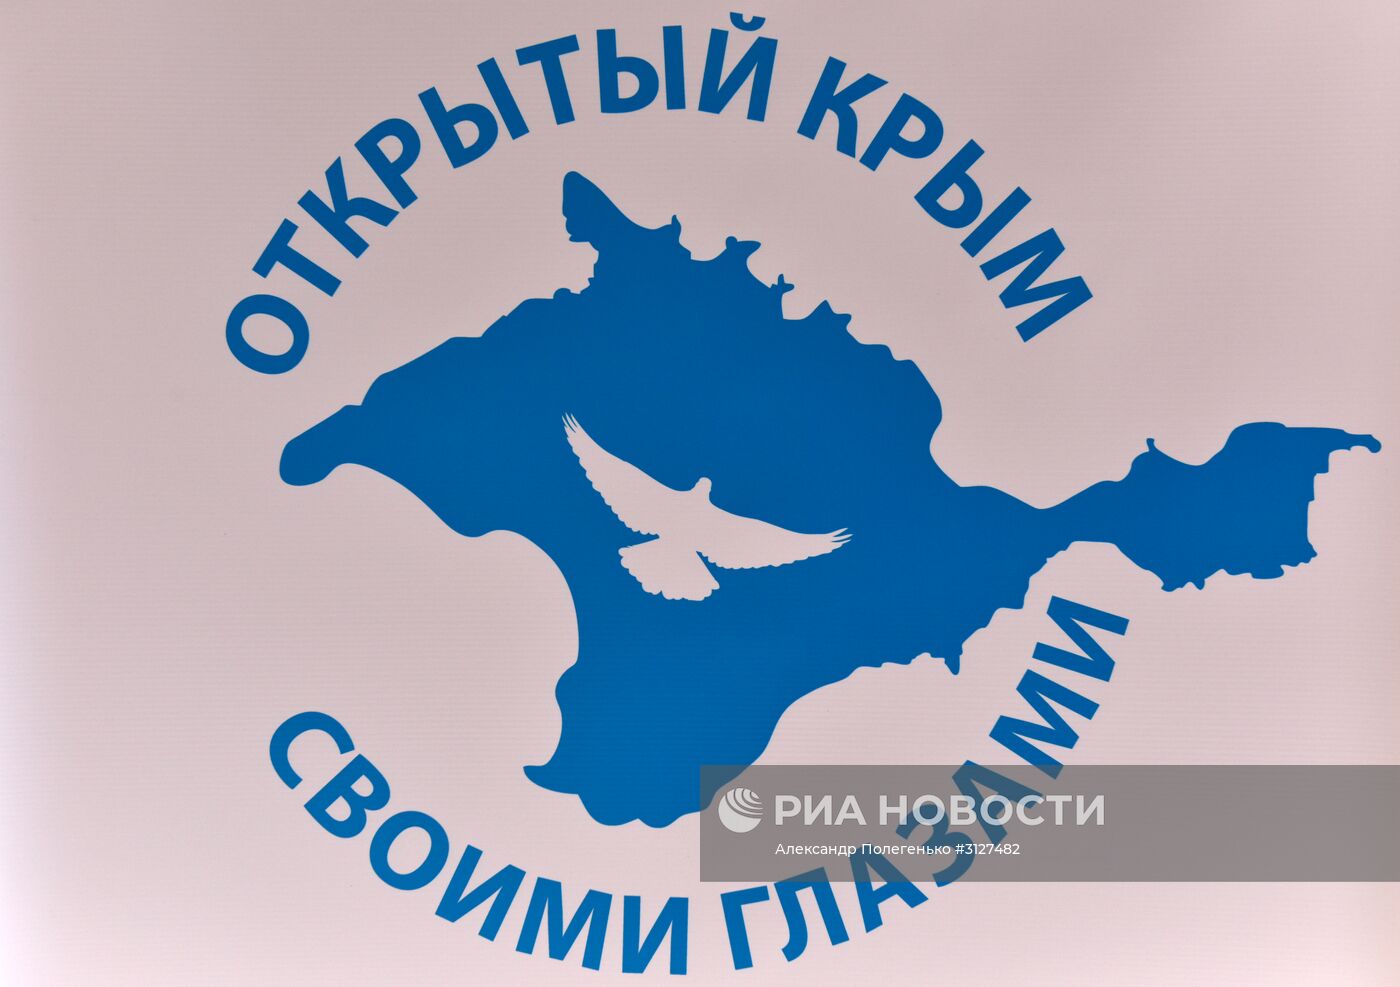 Медиафорум "Открытый Крым: своими глазами"